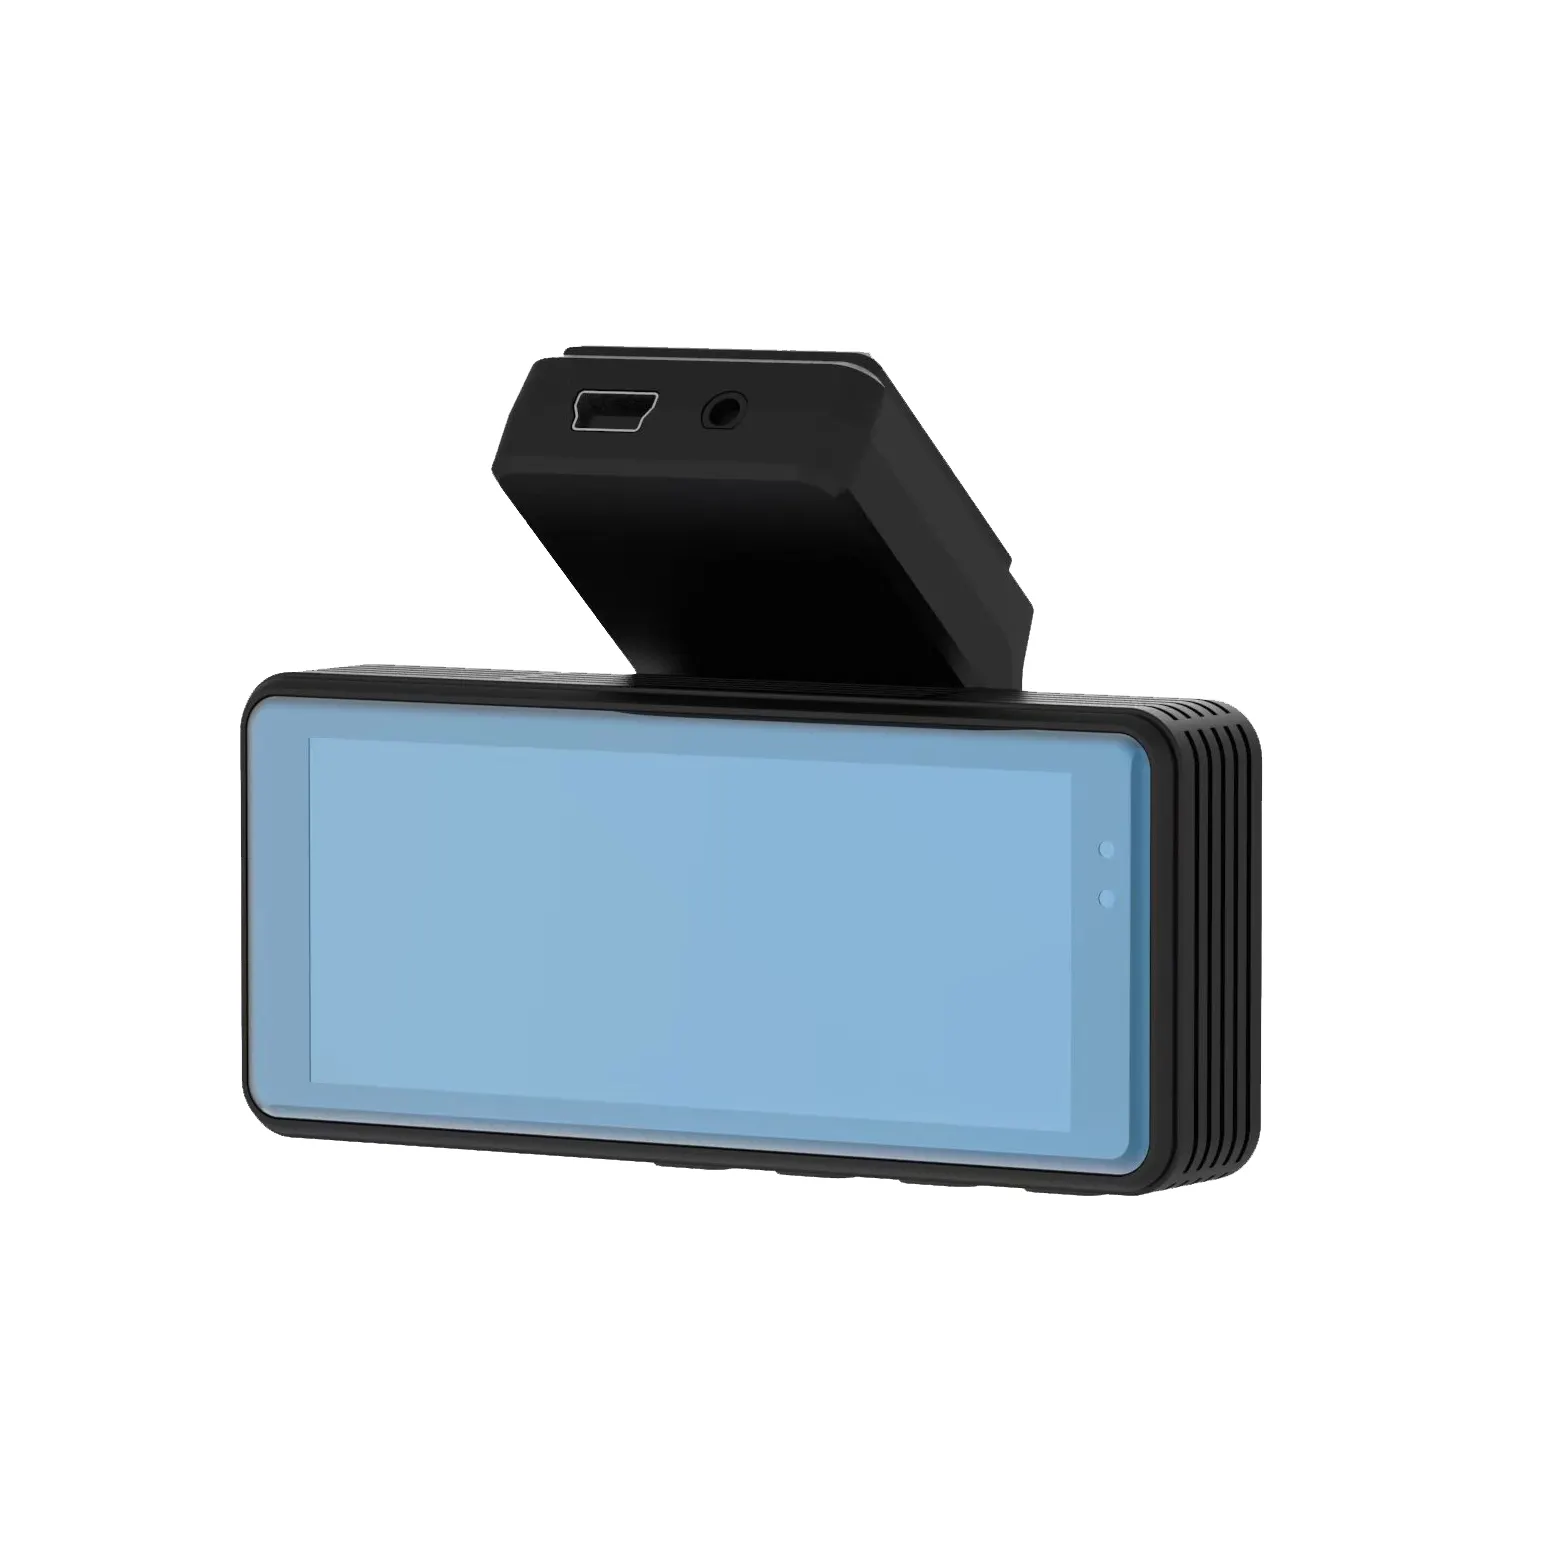 Dash Cam-cámara frontal y trasera para coche, grabadora de vídeo DVR para vehículo, caja negra, FULL HD 1080P, visión nocturna